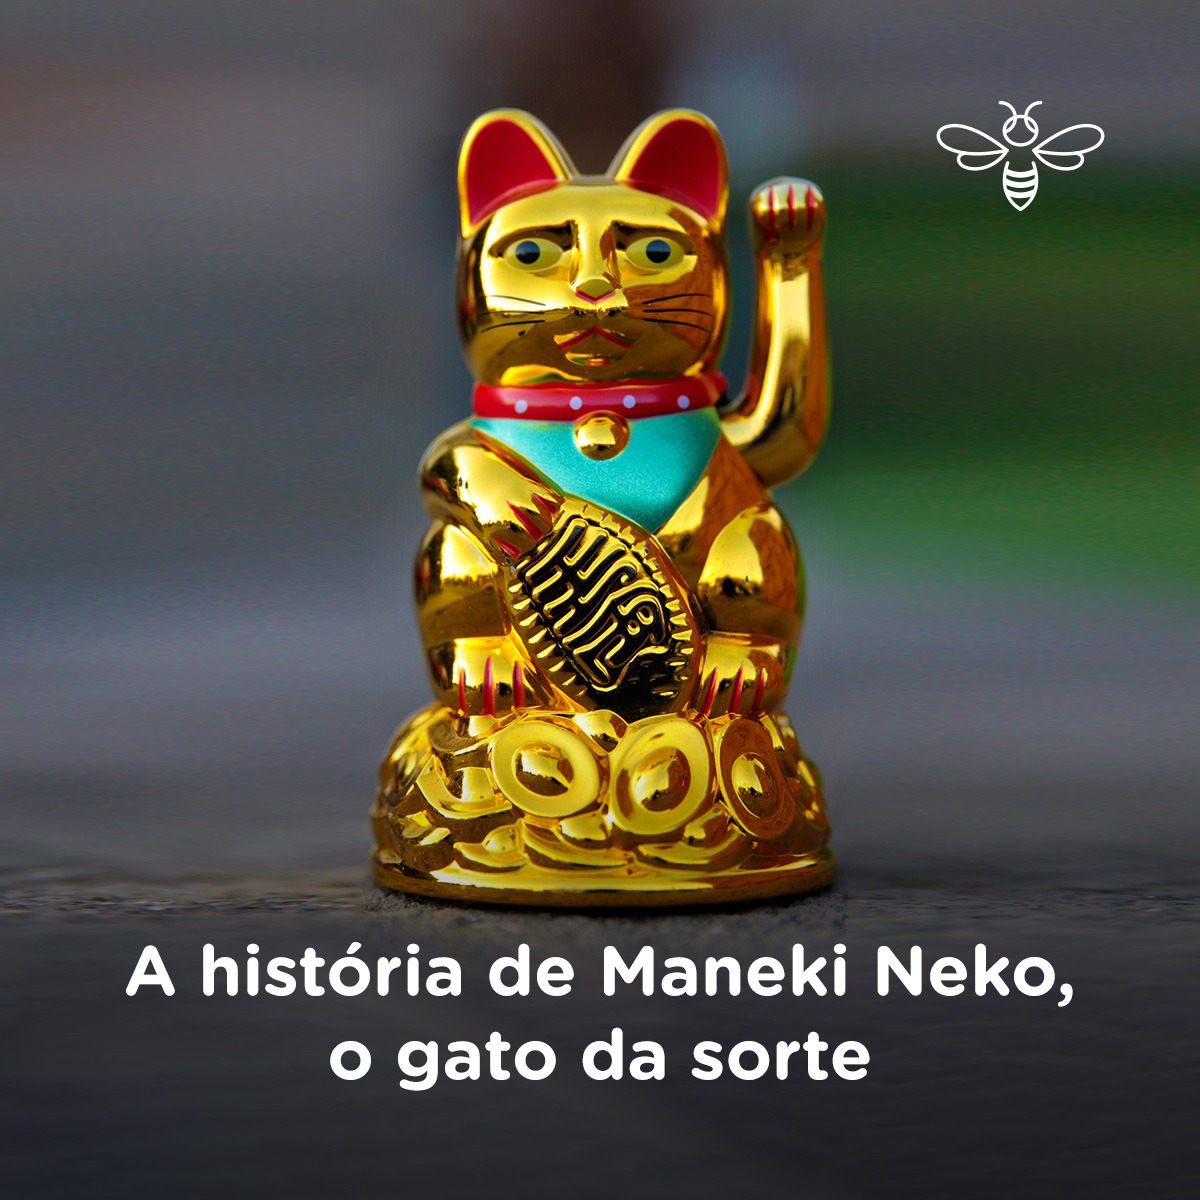 A história de Maneki Neko, o gato da sorte